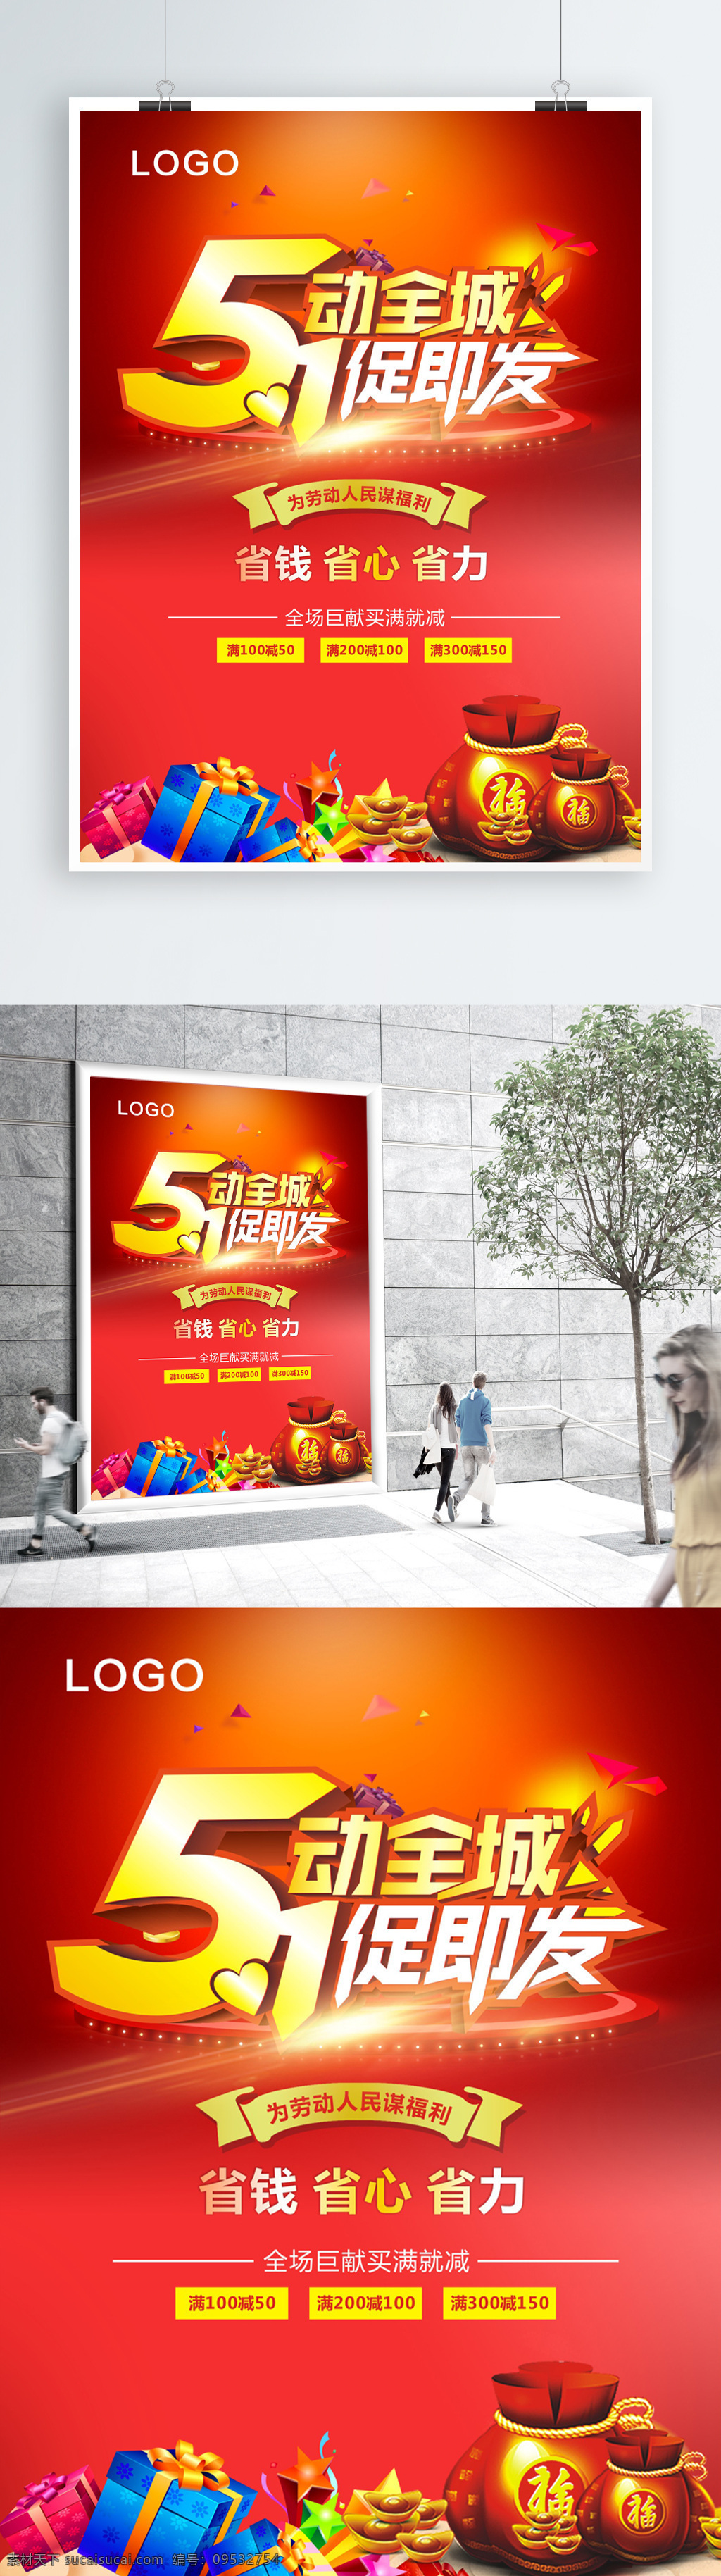 舞动 全城 模板 十一 喜庆 购物 展架 促销 51 劳动节 商场 海报 狂欢